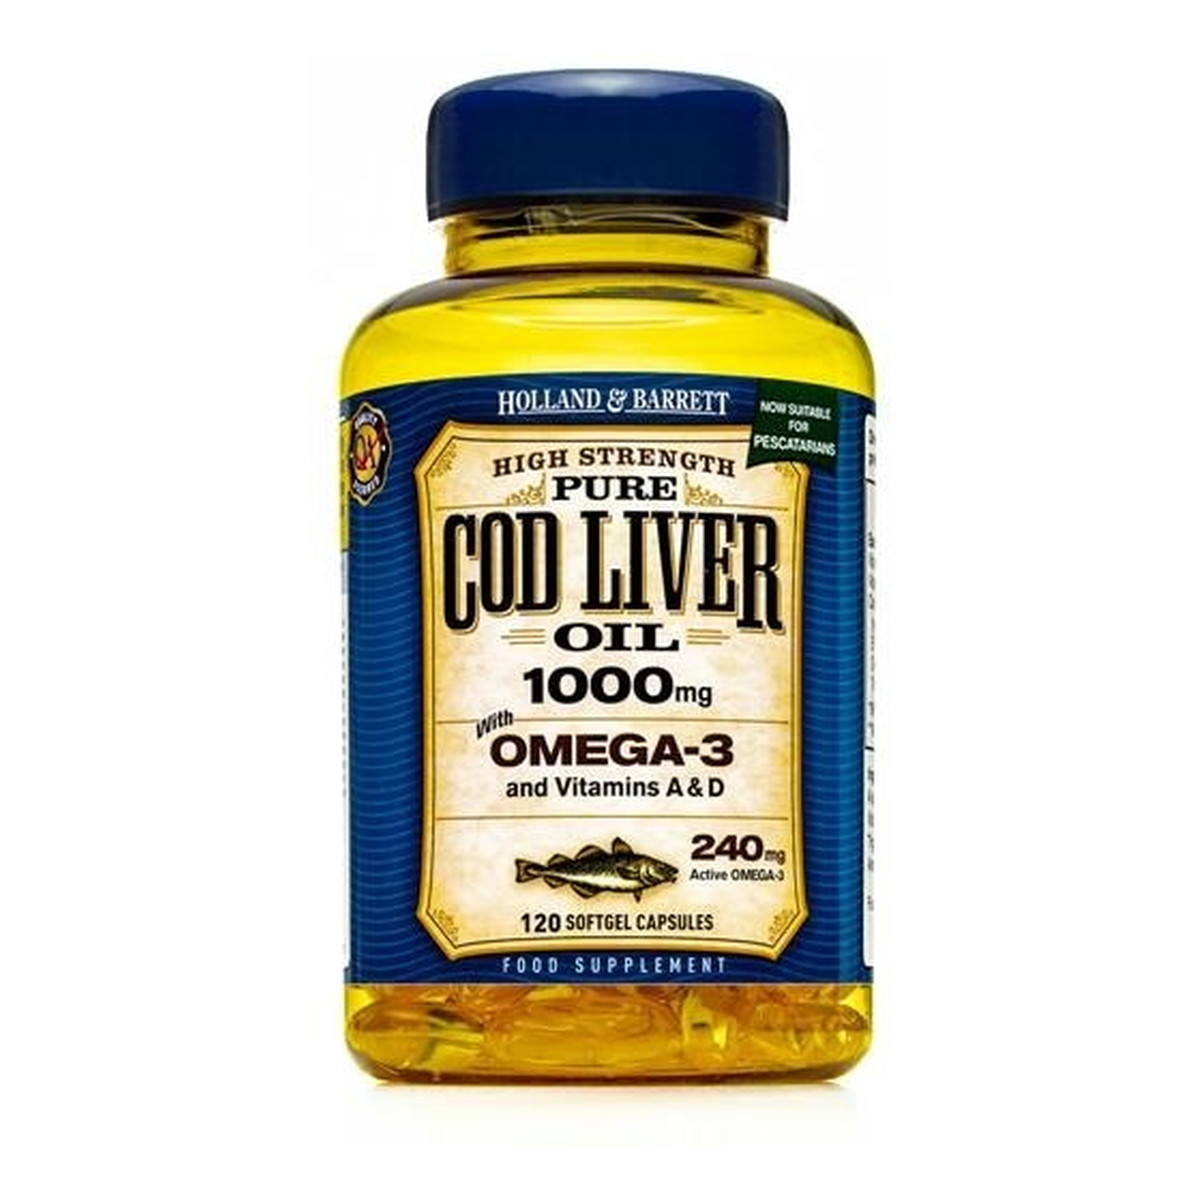 Holland & Barrett Pure Cod Liver Oil 1000mg olej z wątroby dorsza z kwasami Omega-3 suplement diety 120 kapsułek żelowych